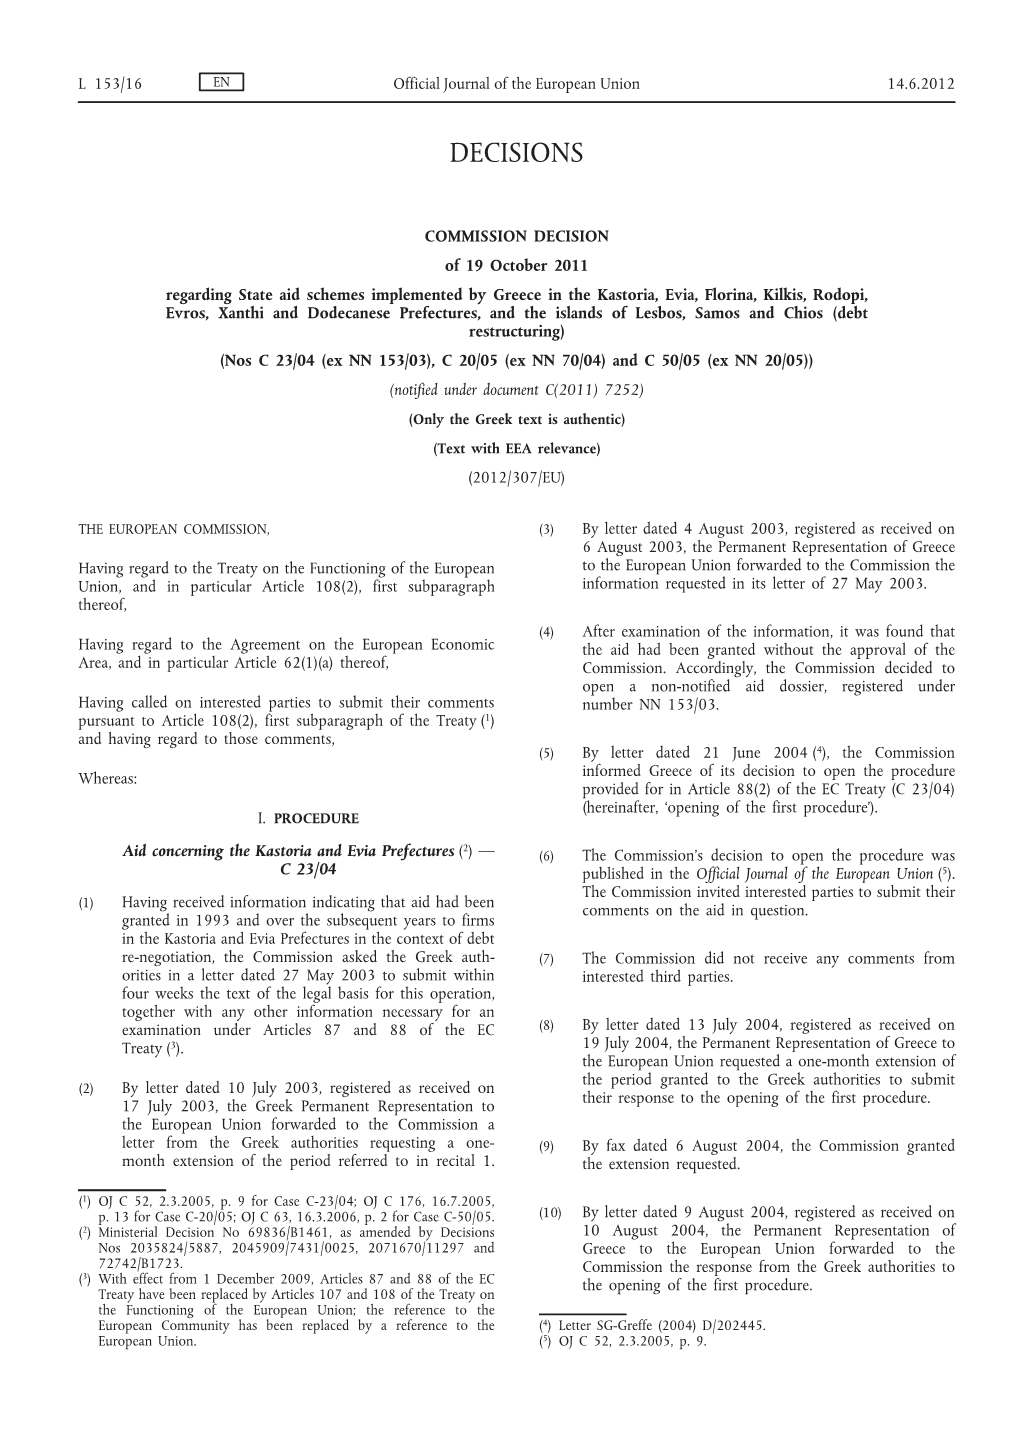 Commission Decision of 19 October 2011 Regarding